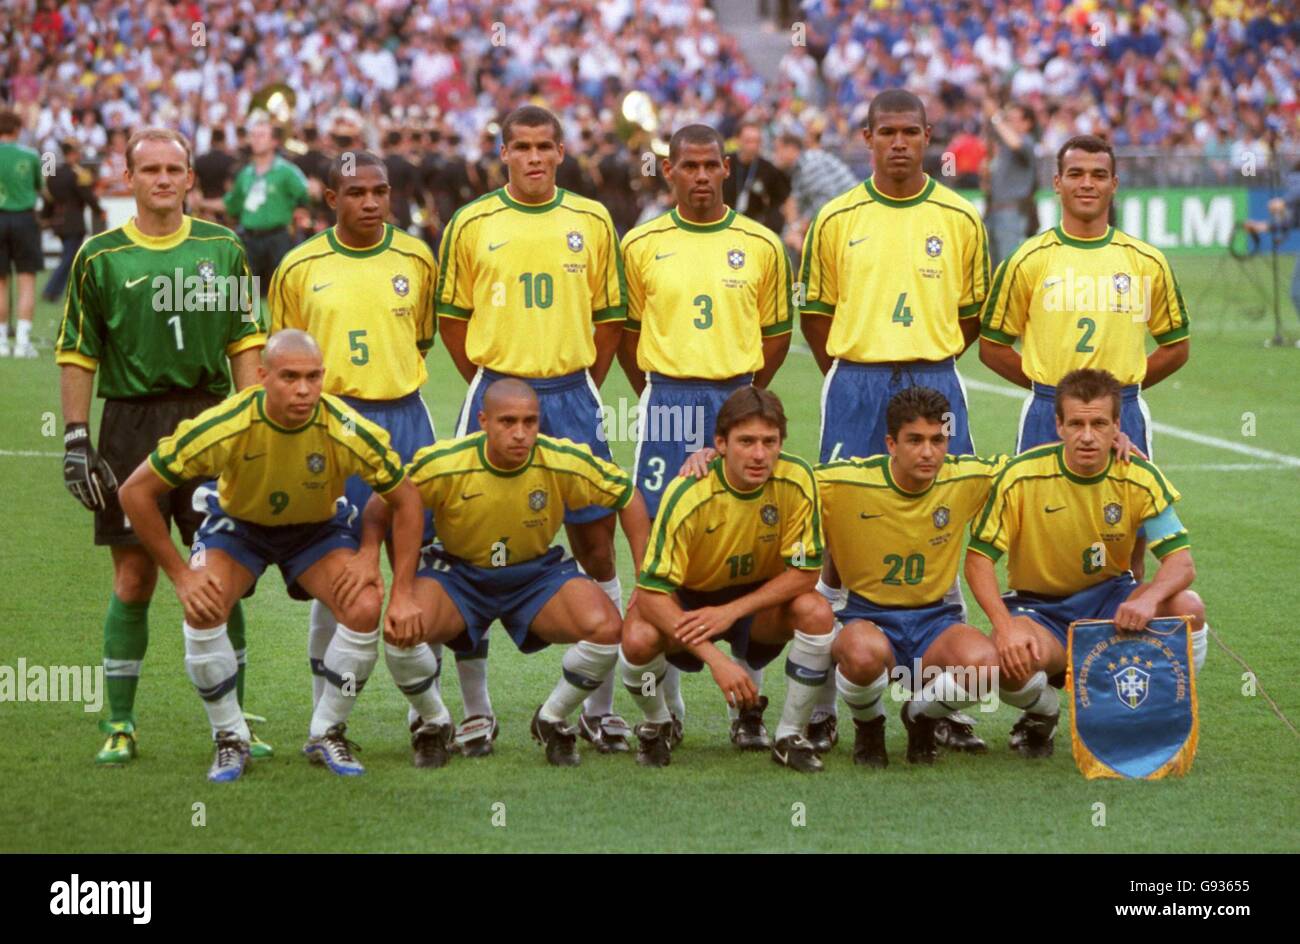 Soccer - World Cup France 98 - Final - Brazil v France. Brazil